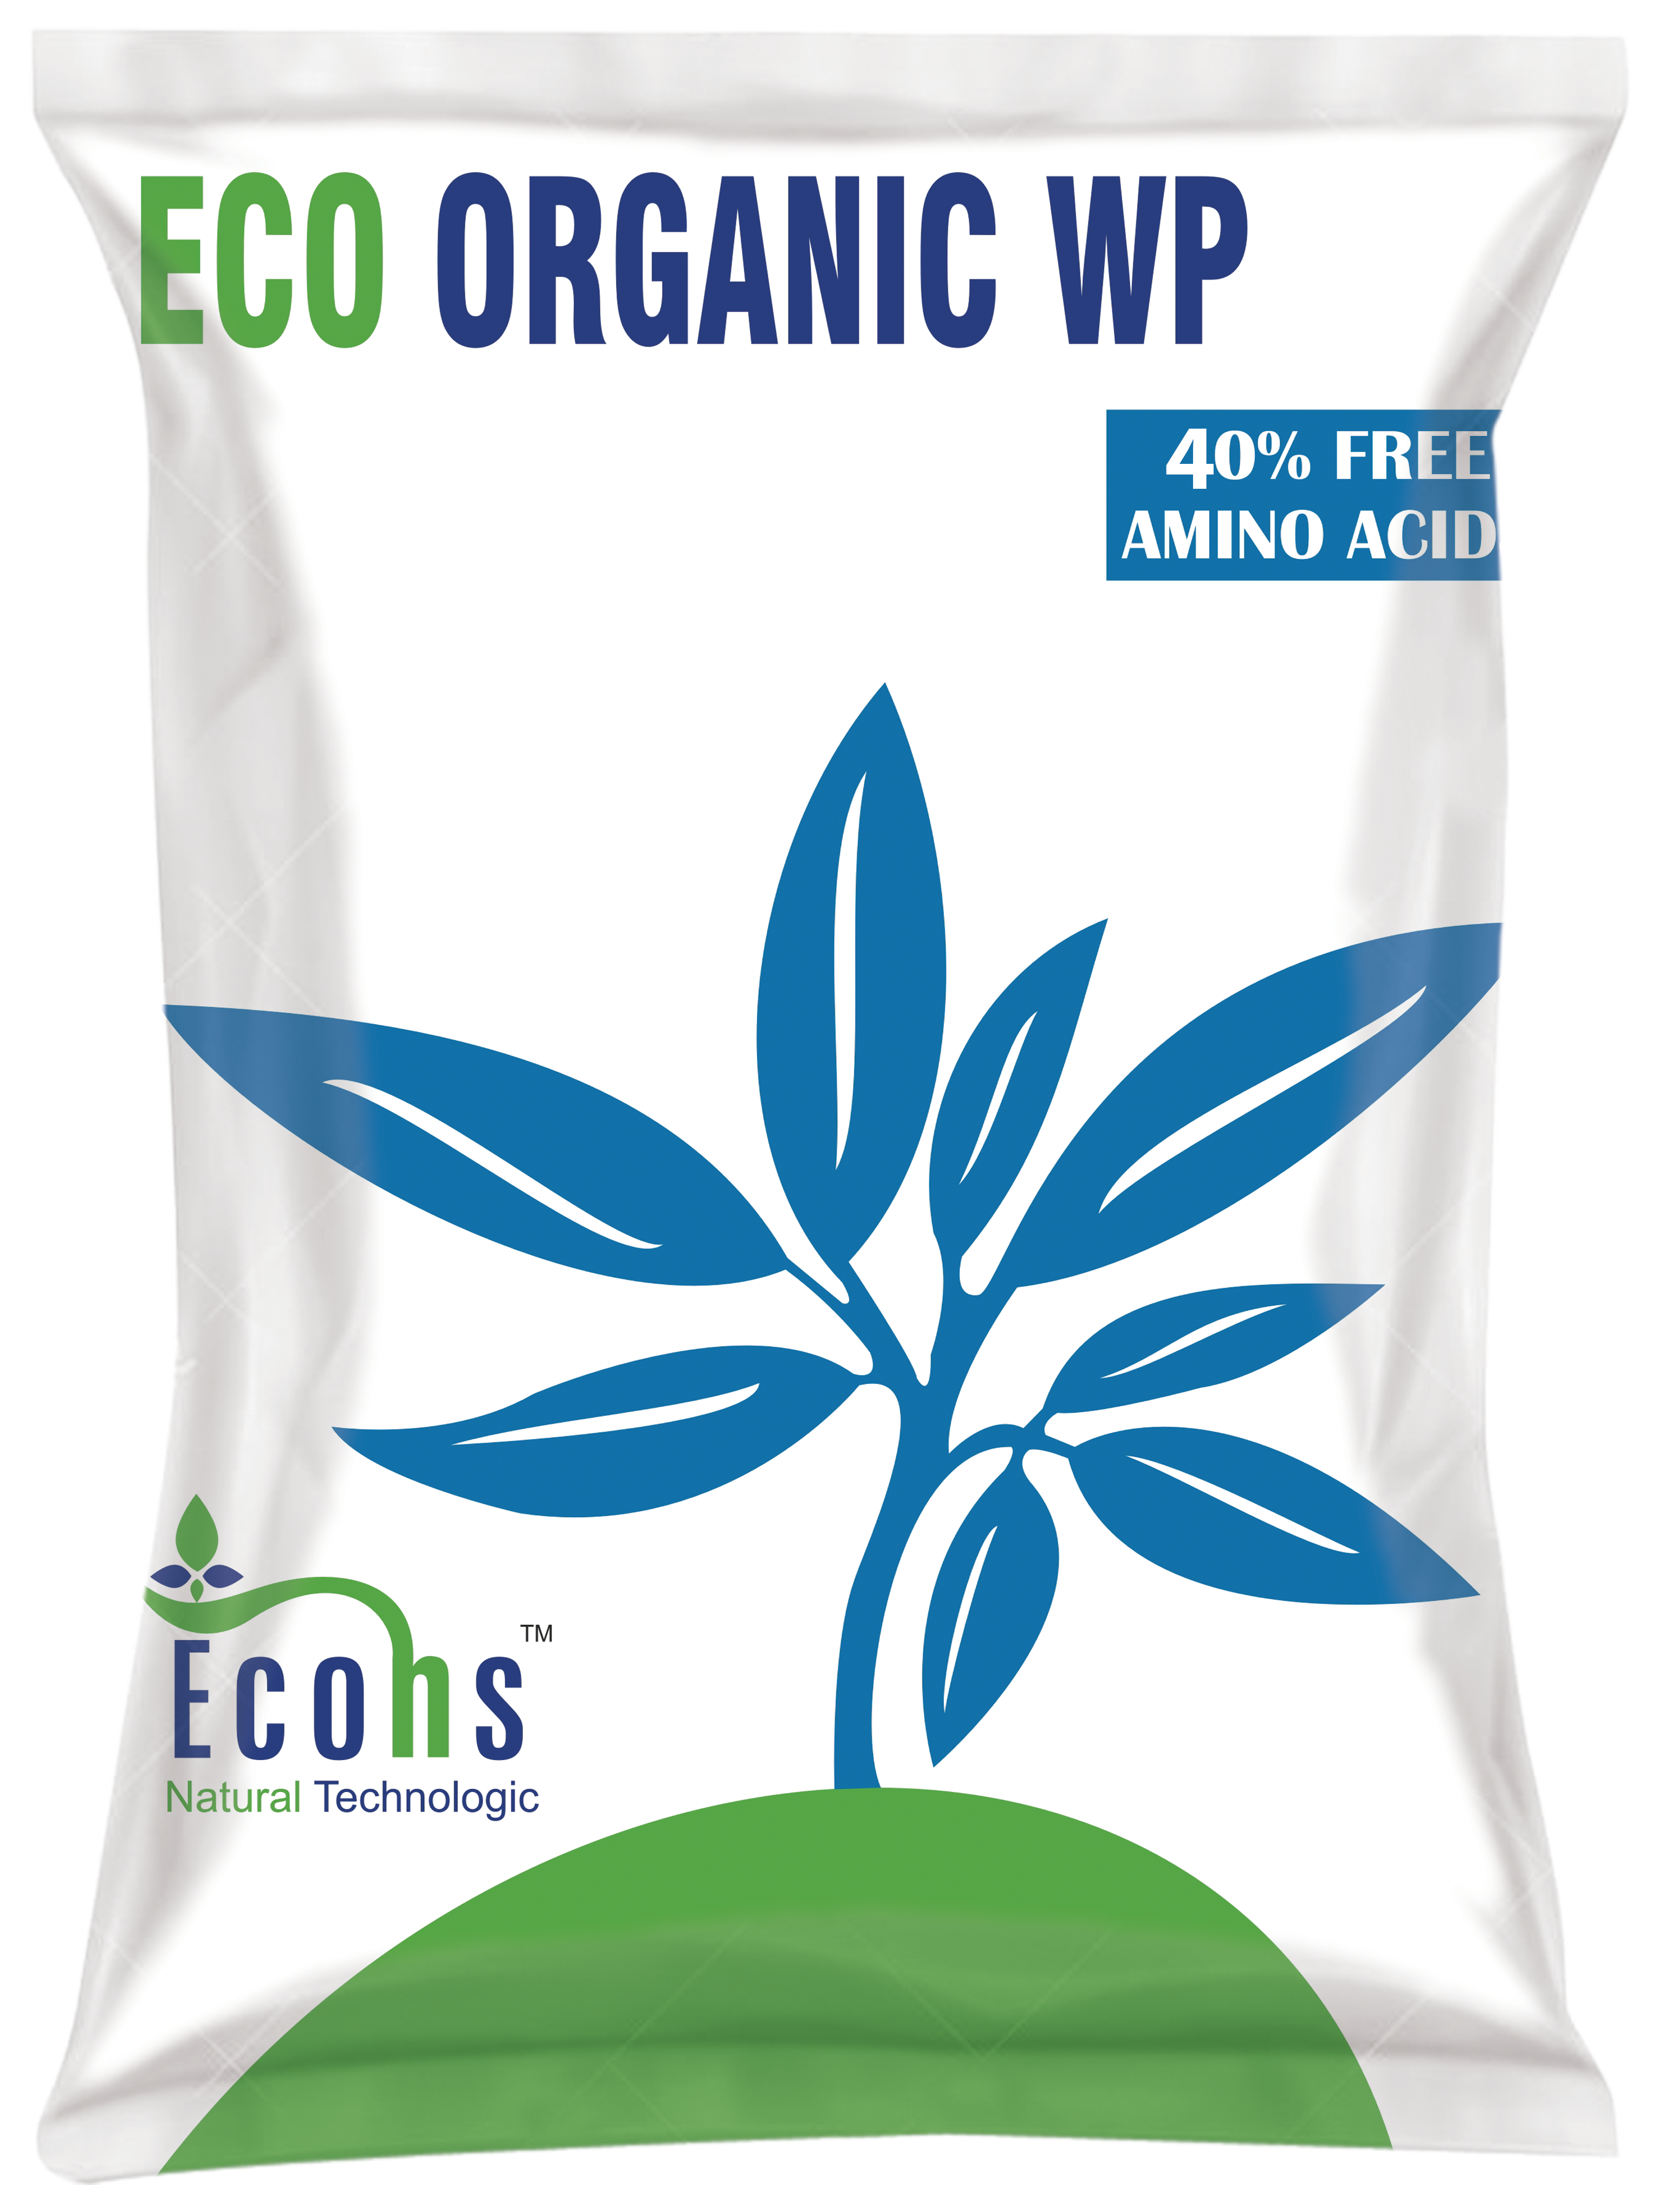 Eco Organic WP